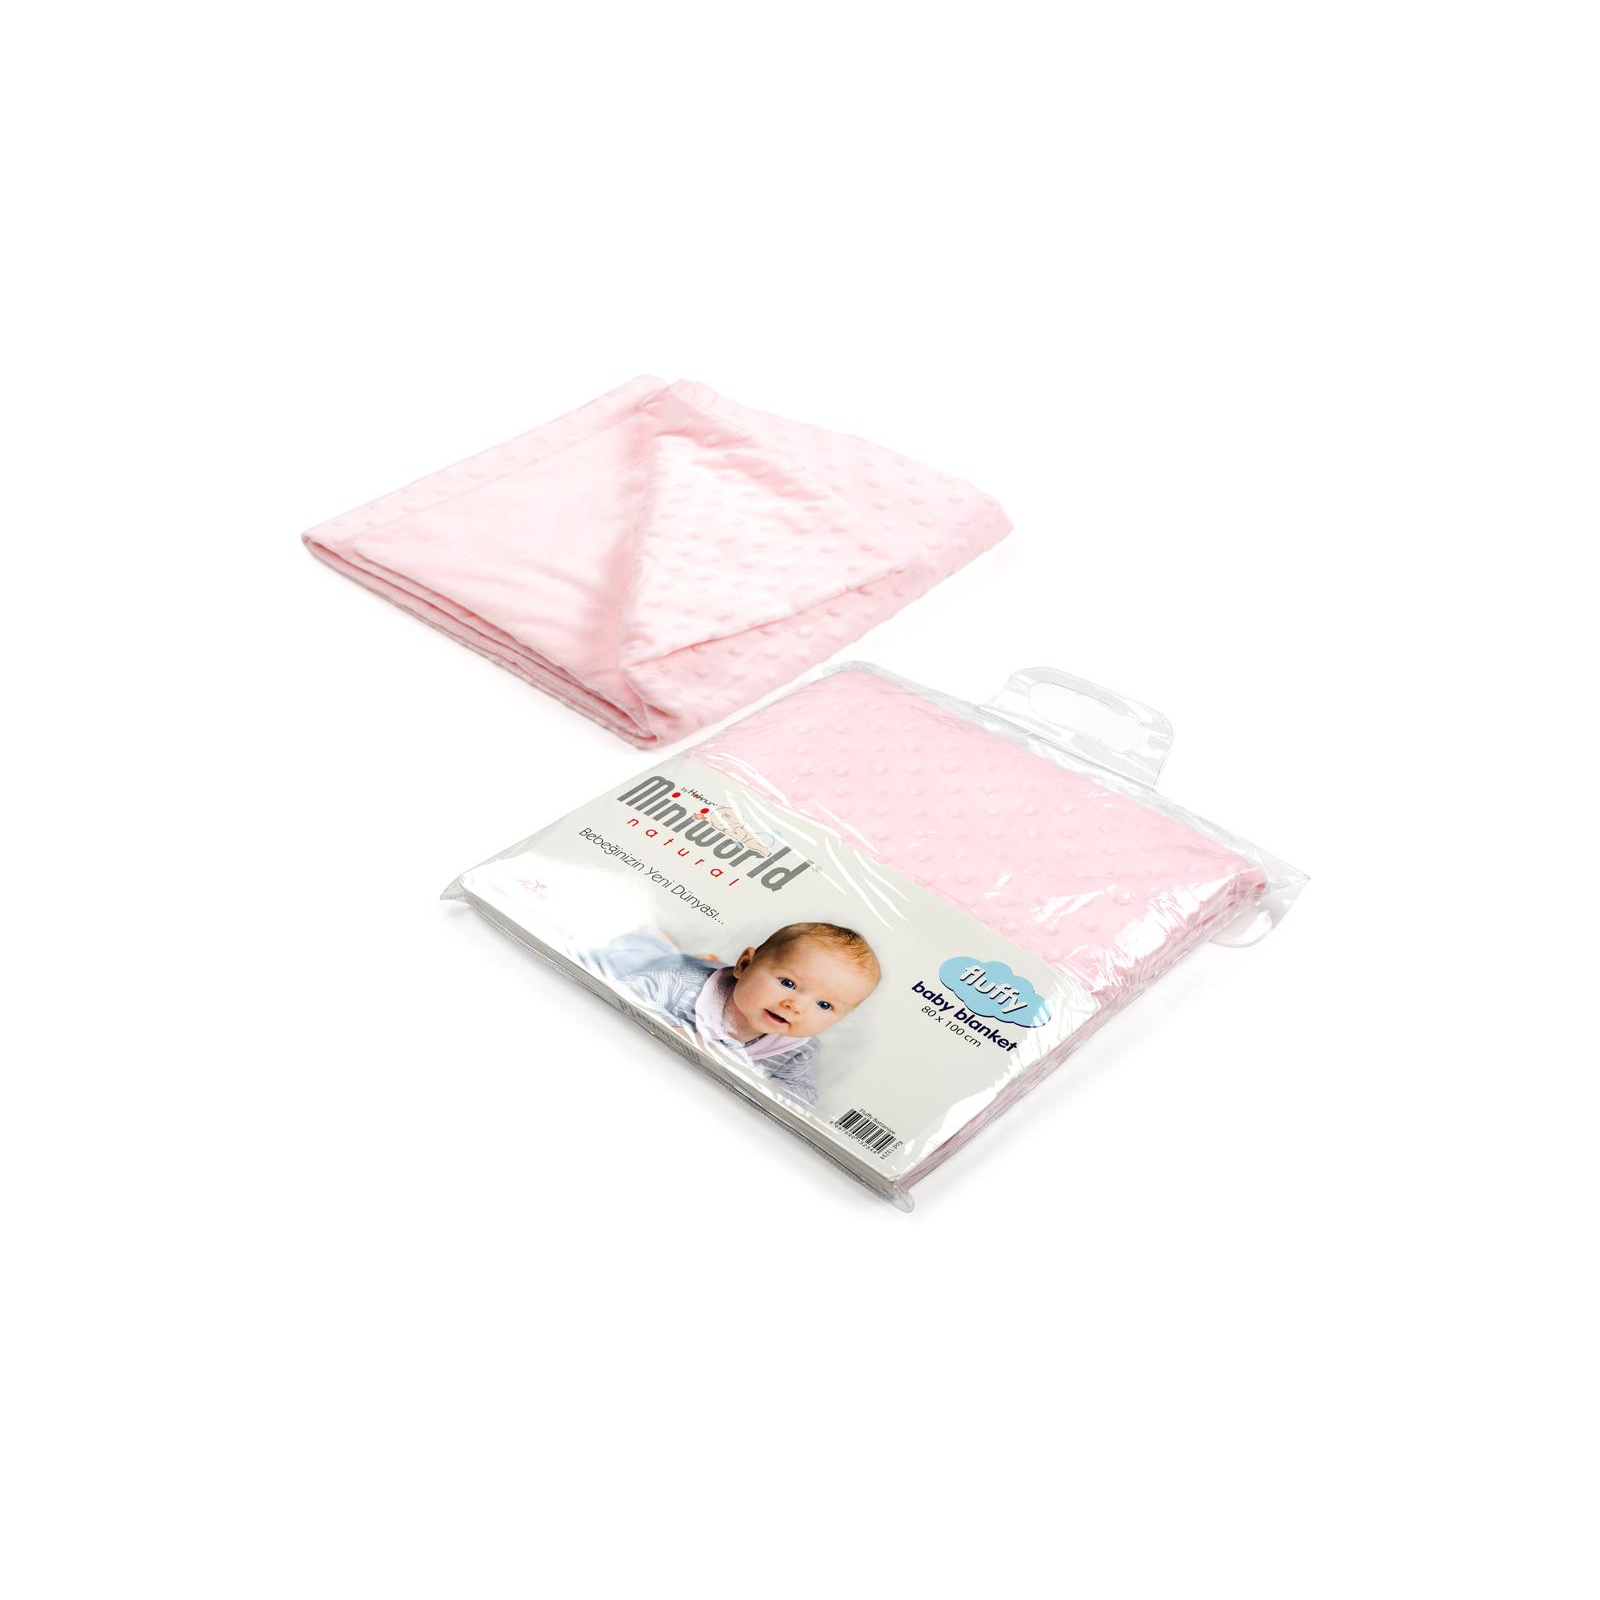 Детское одеяло Miniworld велюровый (13234-pink)